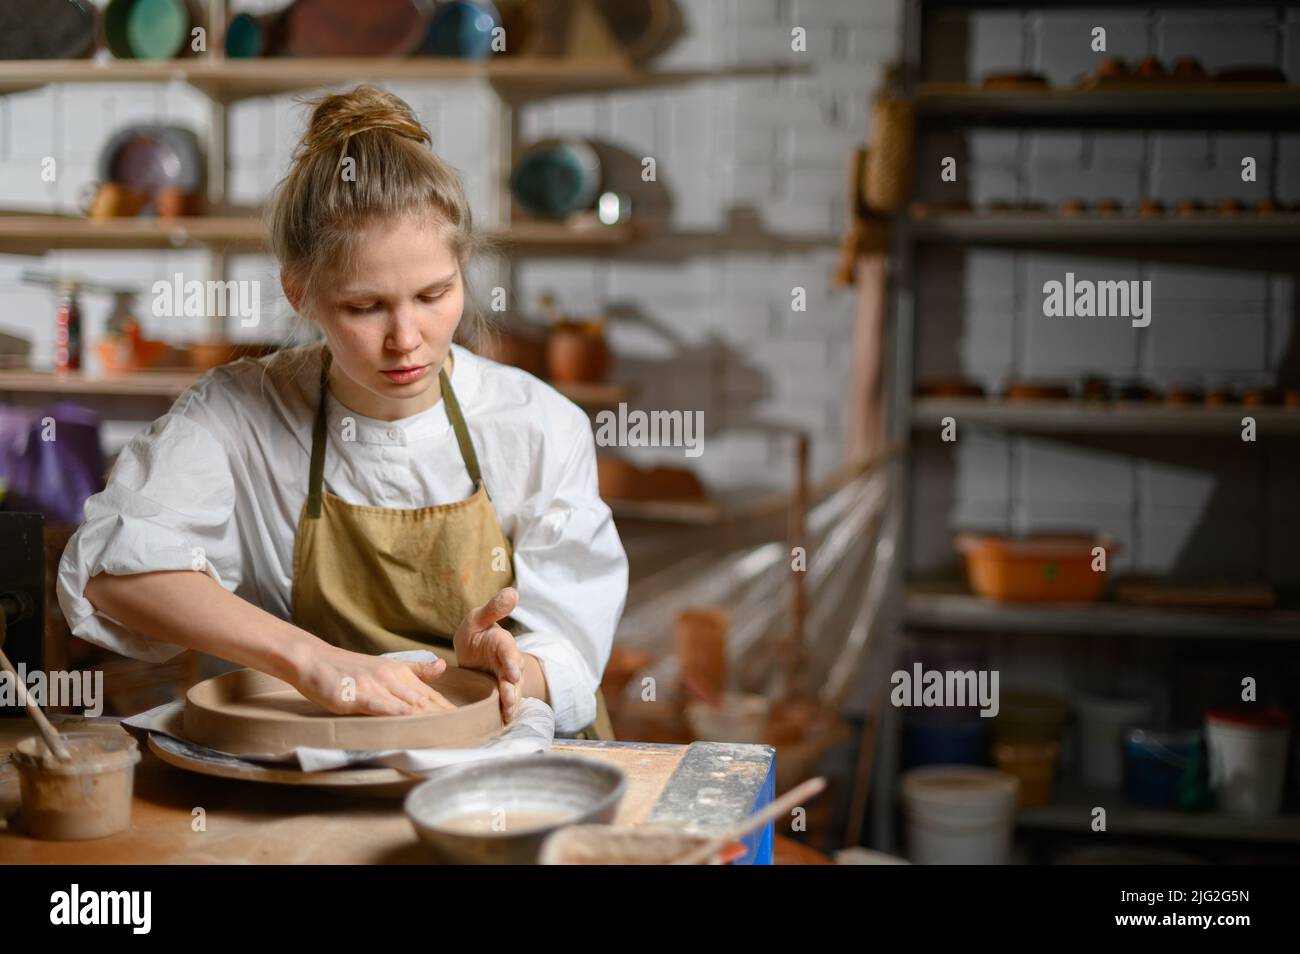 Ein Keramiker macht einen Teller. Frau in einer Schürze arbeitet in einer Töpferwerkstatt. Stockfoto